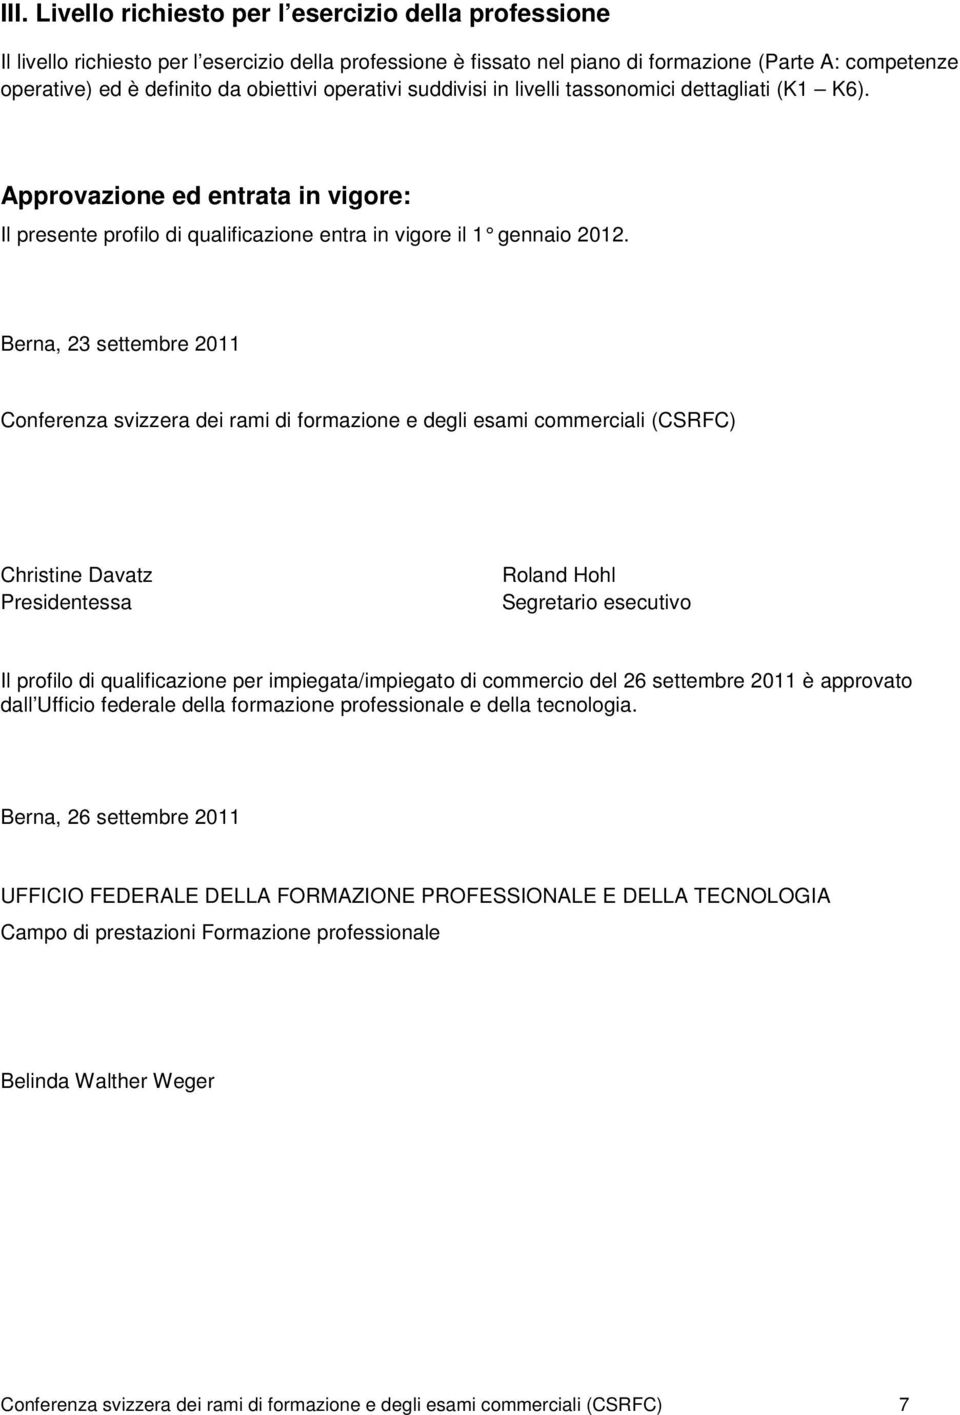 Berna, 23 settembre 2011 Conferenza svizzera dei rami di formazione e degli esami commerciali (CSRFC) Christine Davatz Presidentessa Roland Hohl Segretario esecutivo Il profilo di qualificazione per